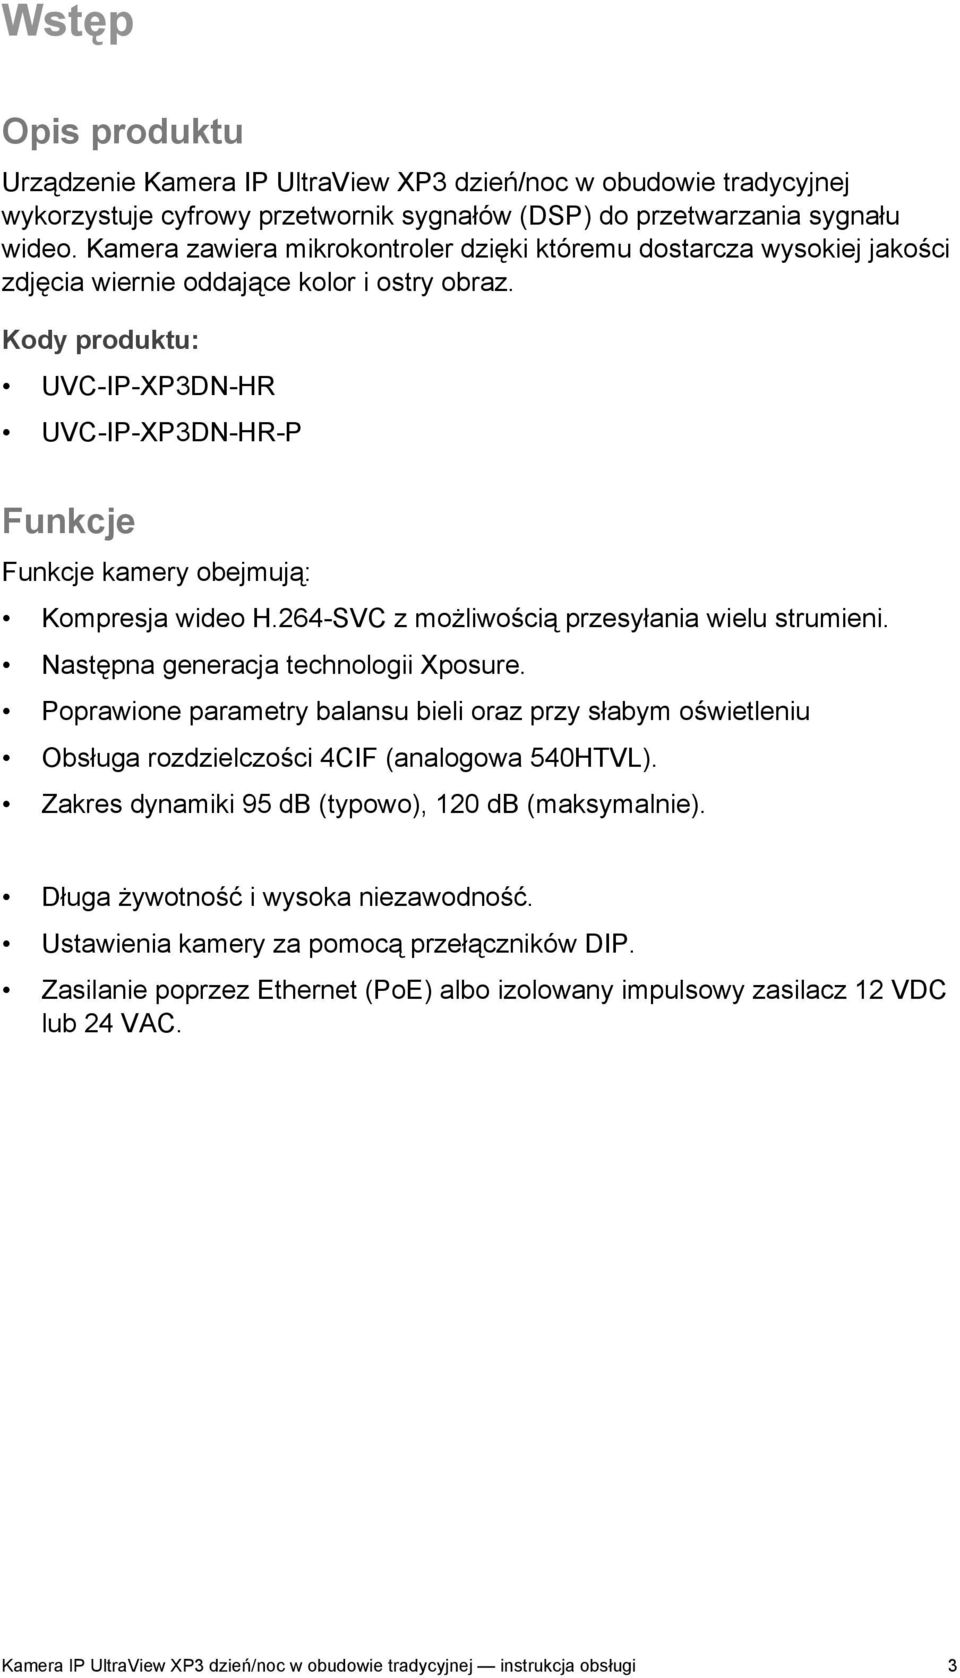 Kody produktu: UVC-IP-XP3DN-HR UVC-IP-XP3DN-HR-P Funkcje Funkcje kamery obejmują: Kompresja wideo H.264-SVC z możliwością przesyłania wielu strumieni. Następna generacja technologii Xposure.